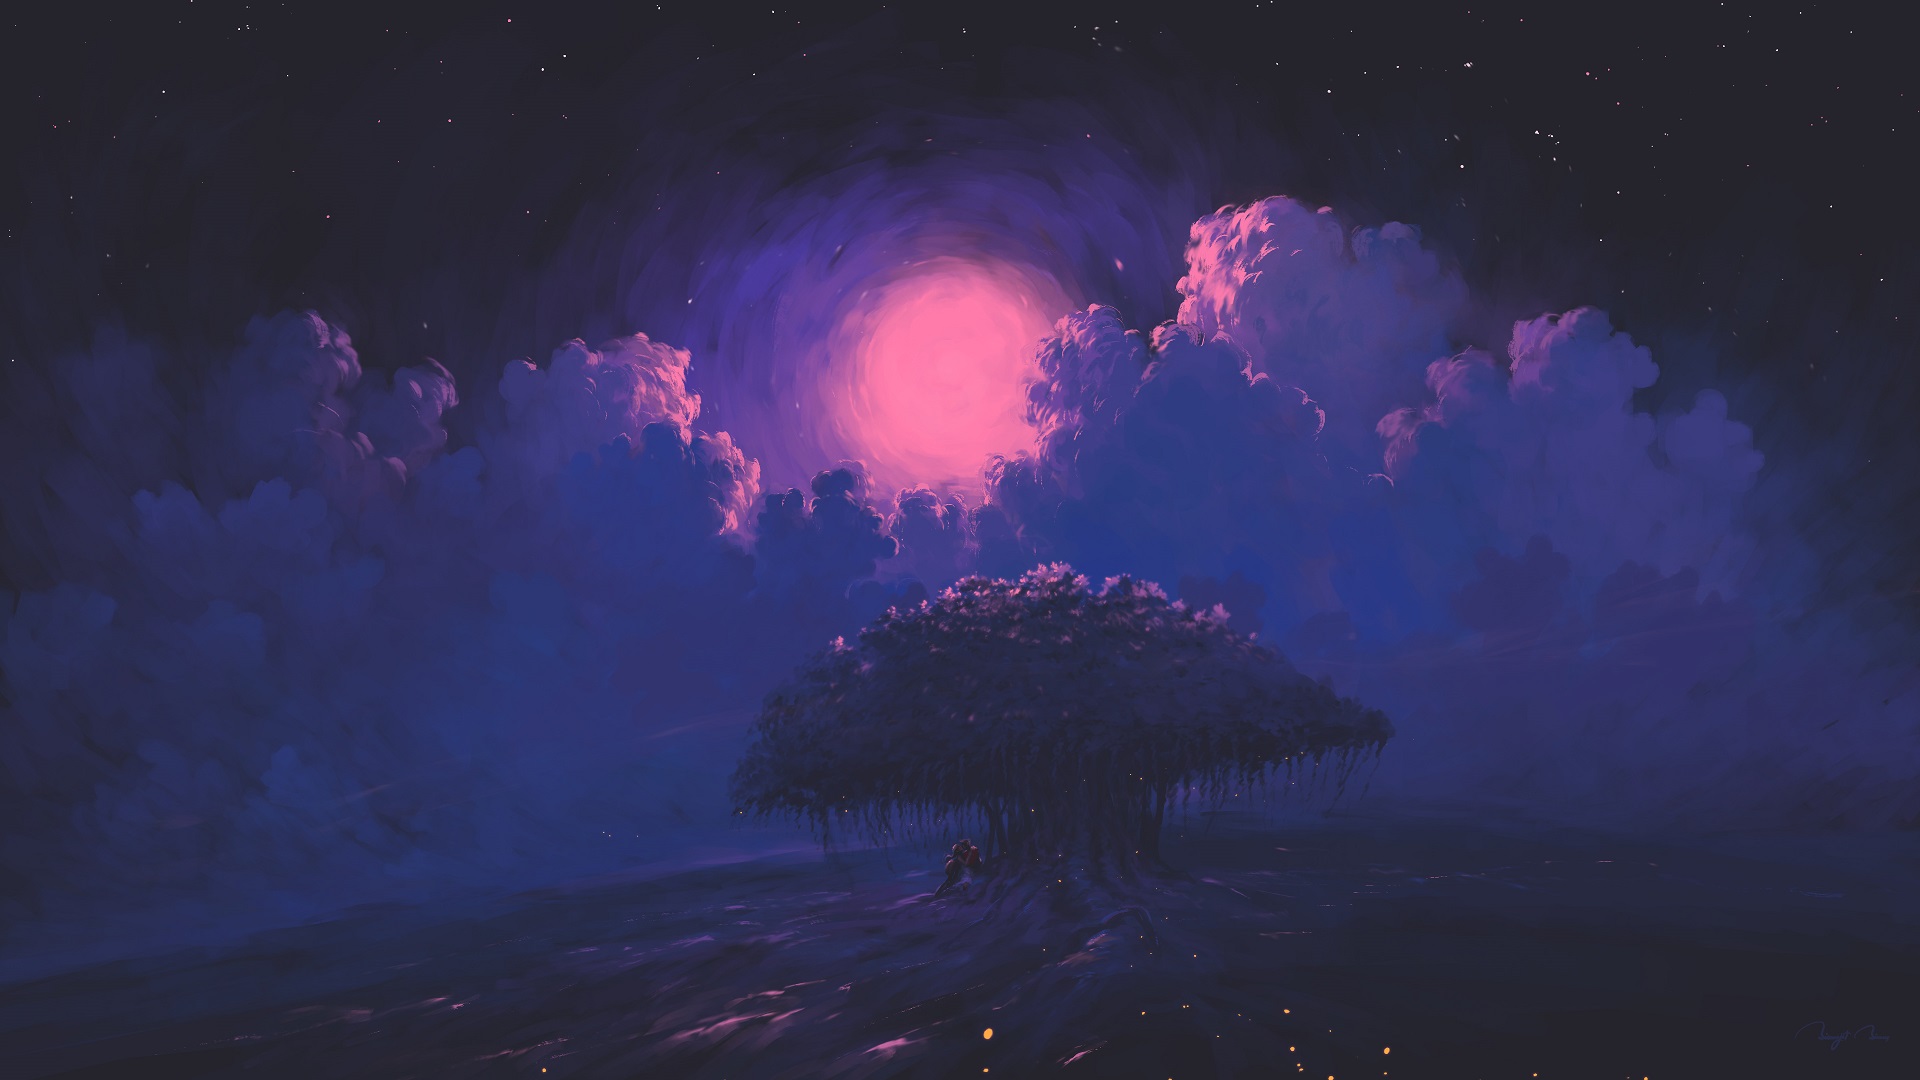 Digital Painting Night Moon Trees Clouds Water Romantic BisBiswas 1920x1080